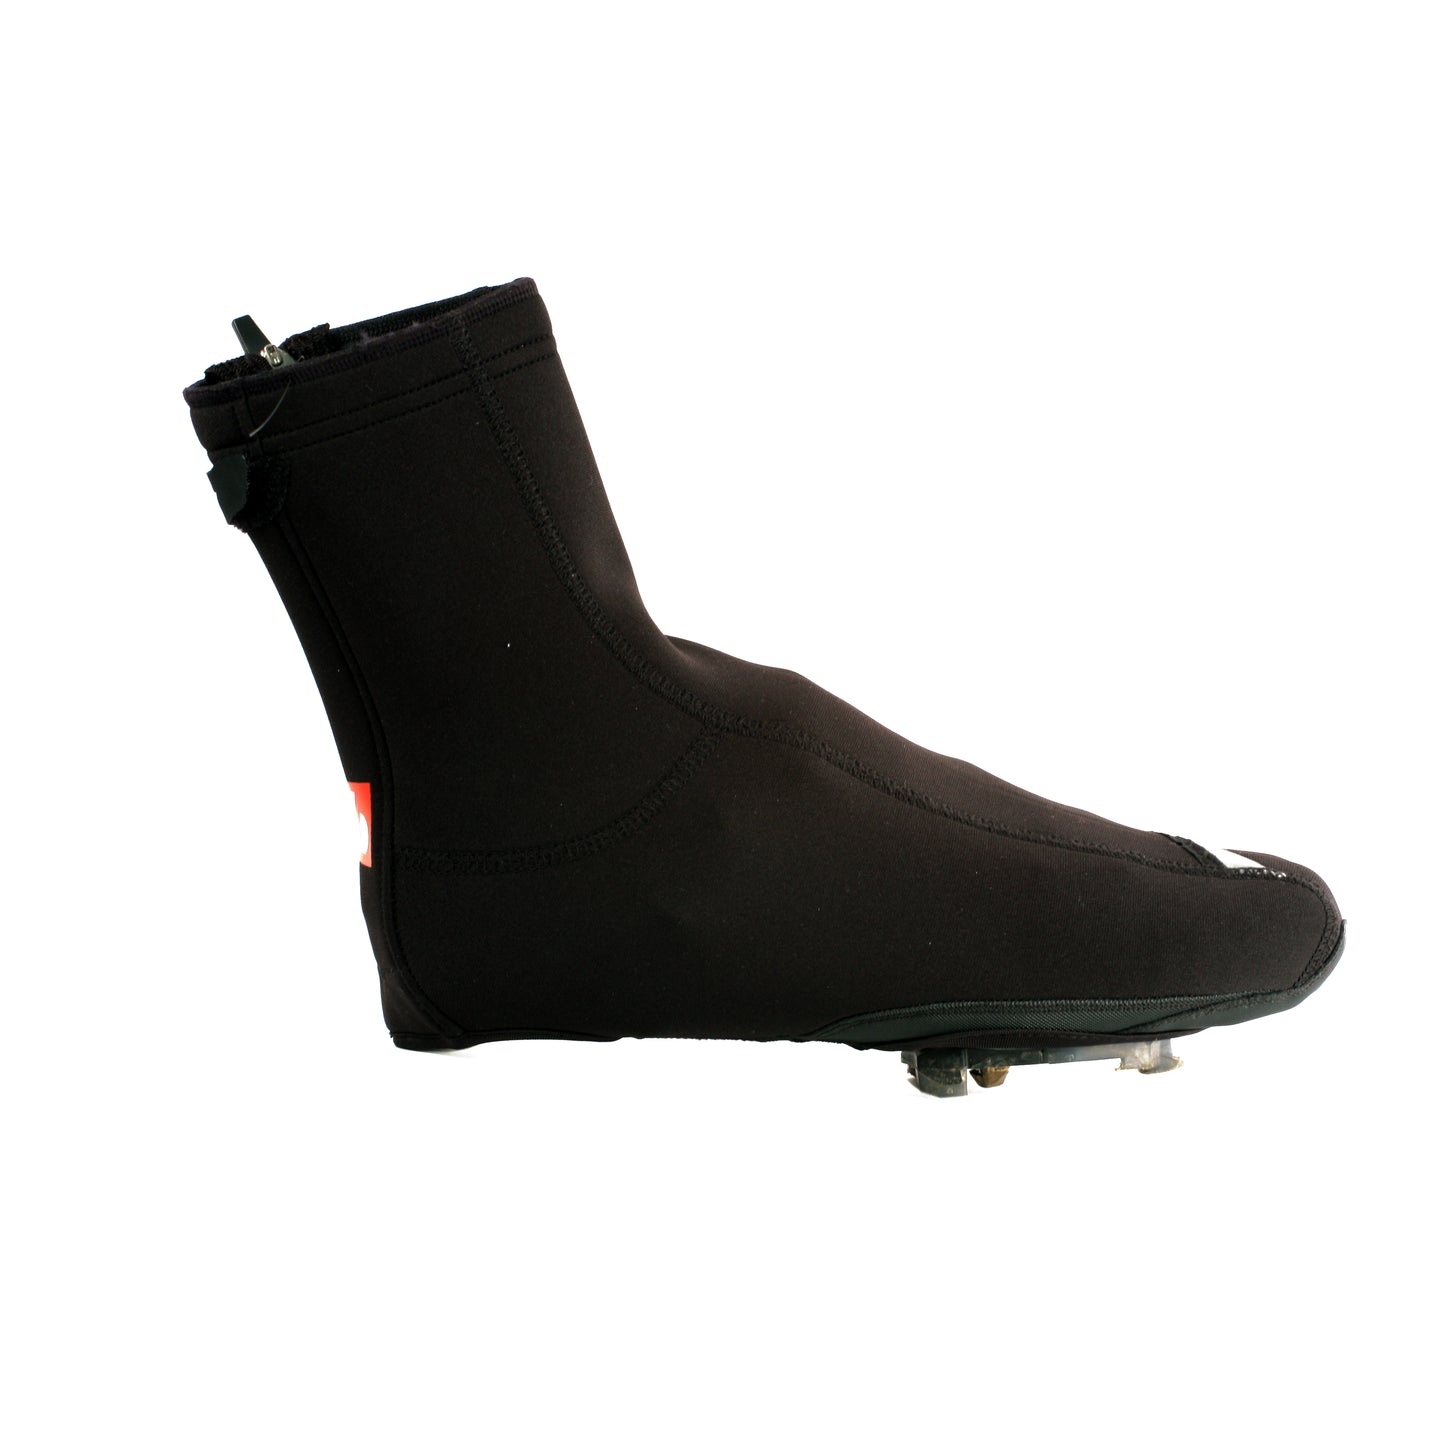 BSP-03 Couvres chaussures noirs, chauds et déperlants